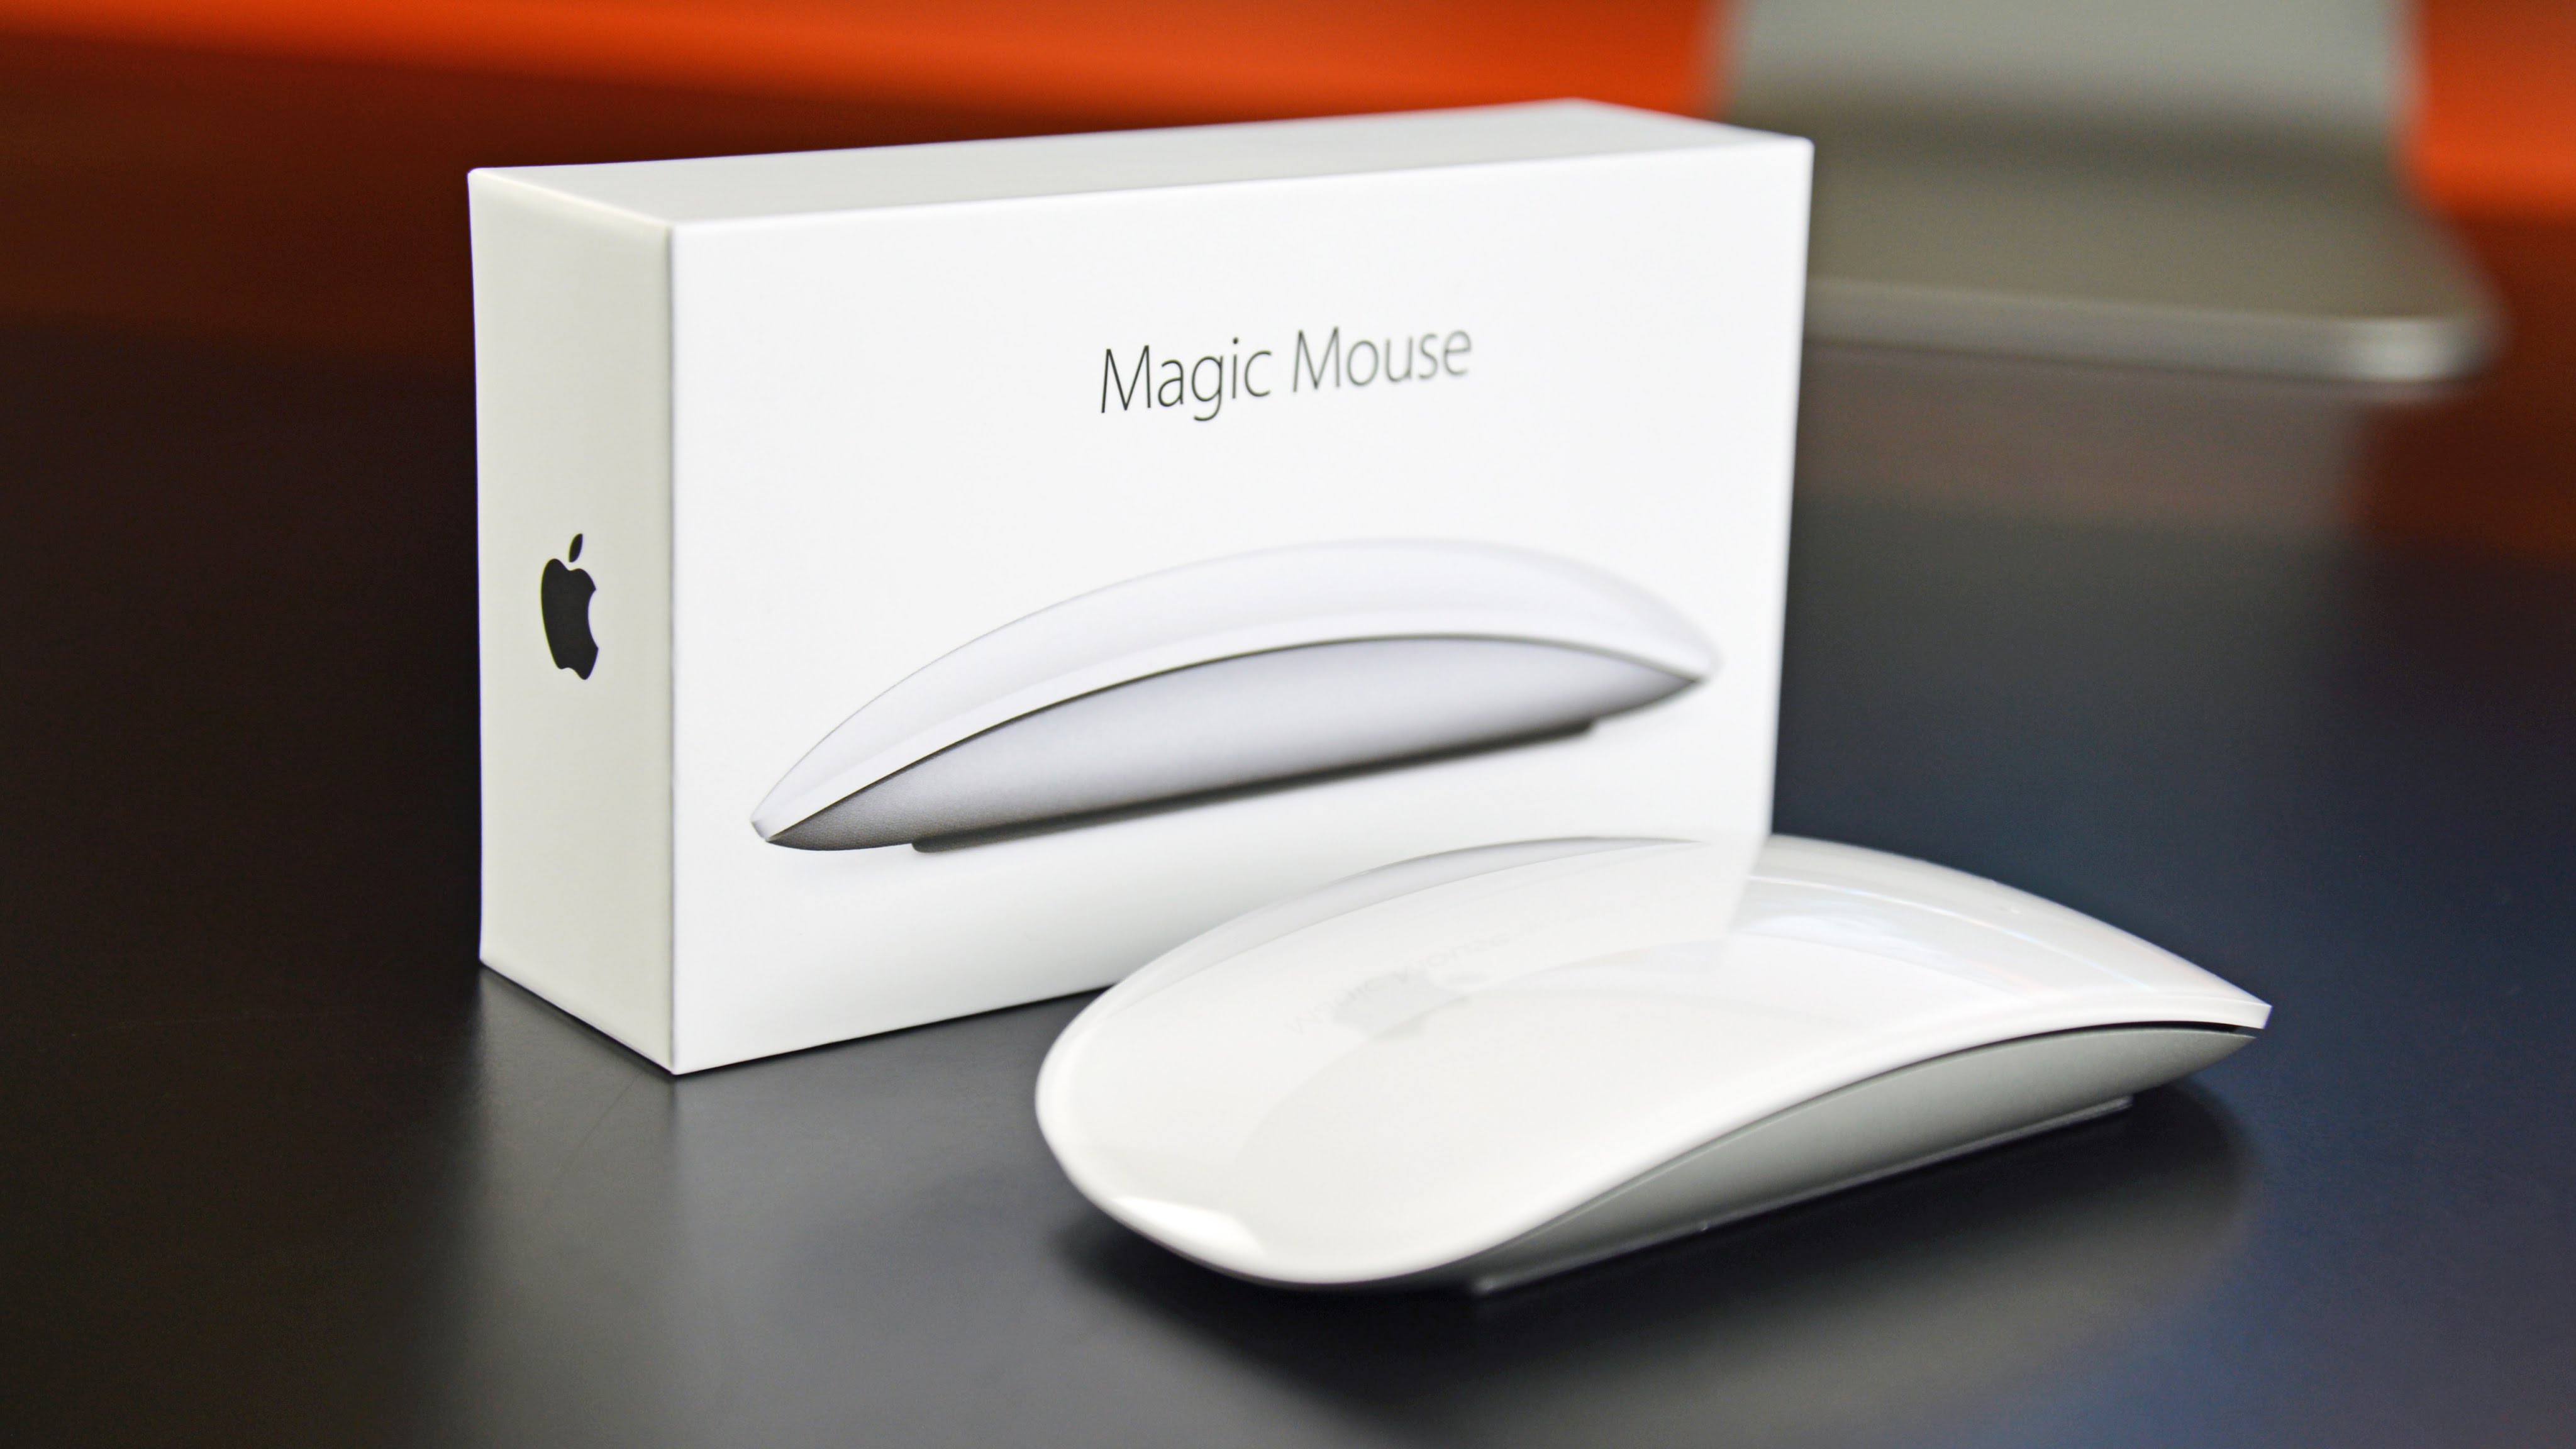 apple trackpad magic mouse 2 2009 mac mini